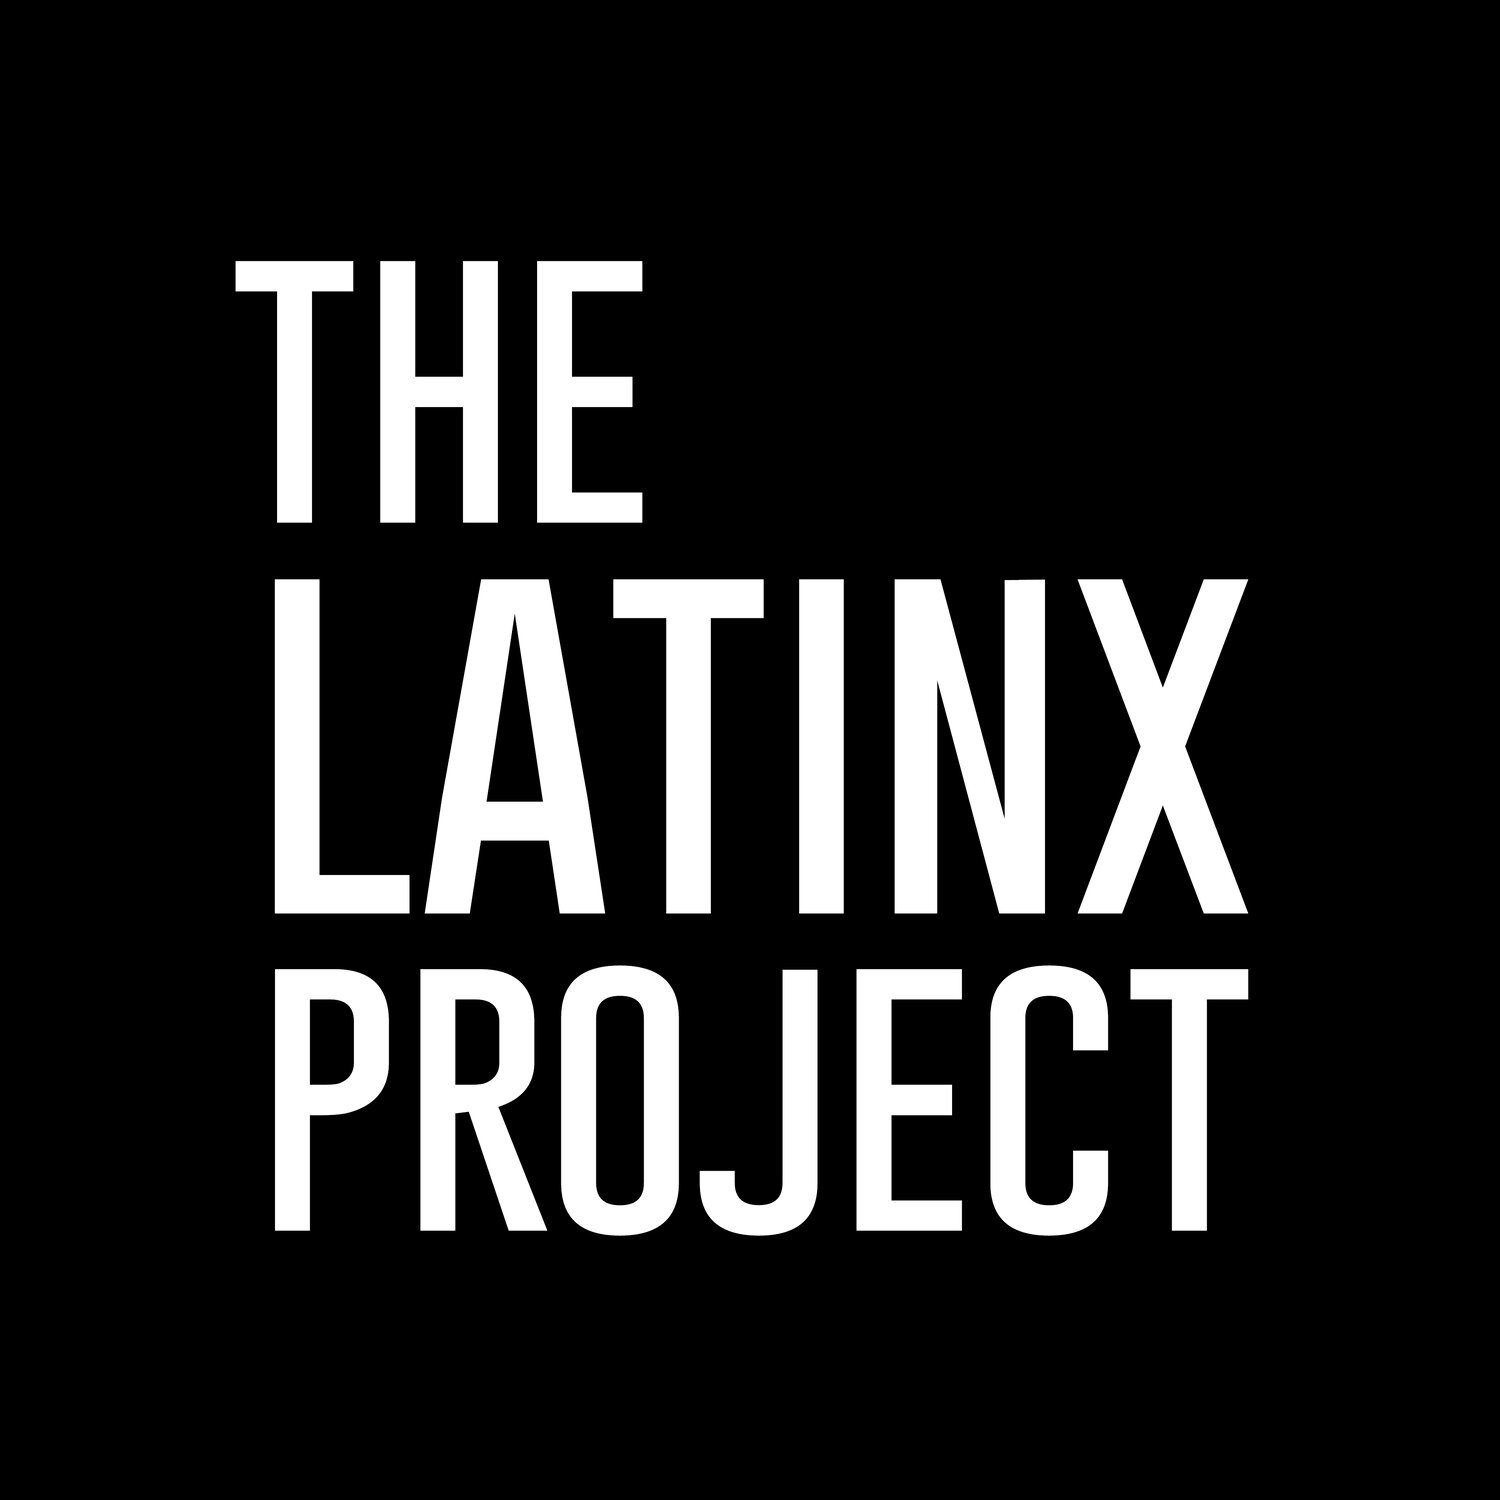 The Latinx Project at NYU